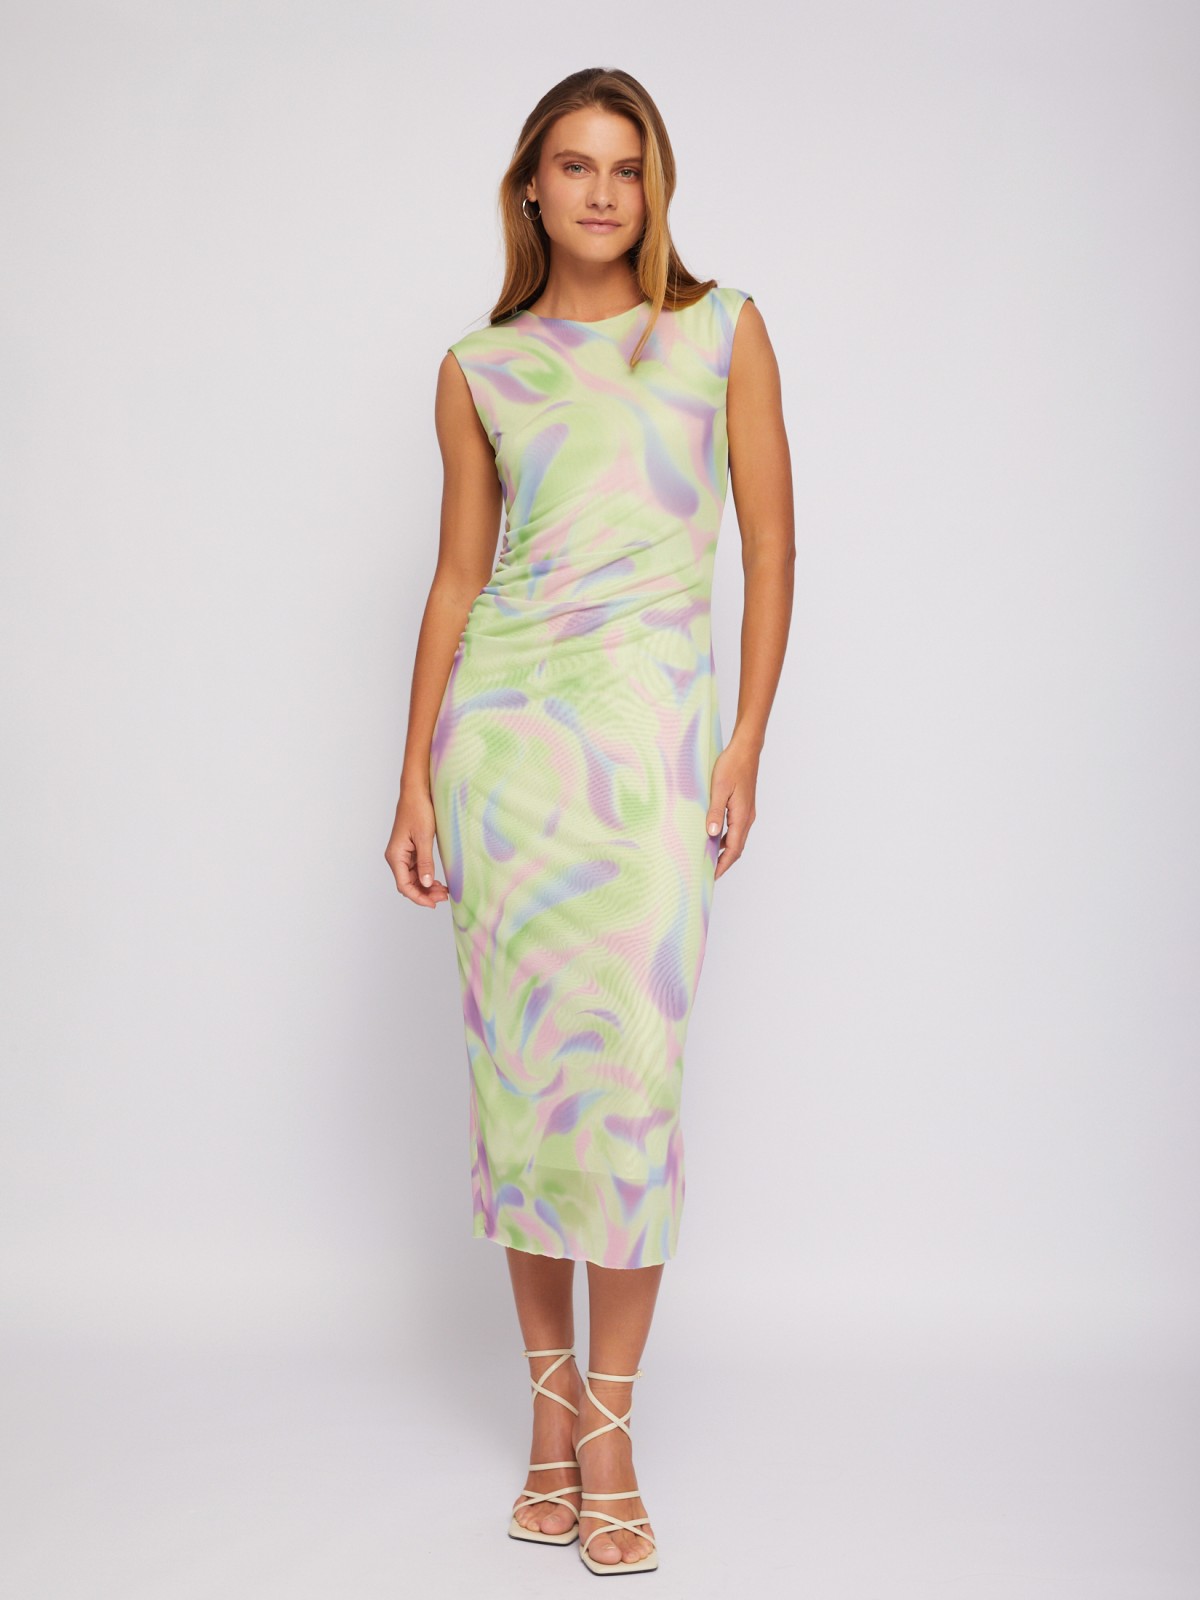 Платье из сетки с принтом Soft Focus и драпировкой zolla 02421819Y011, цвет лайм, размер XS - фото 2